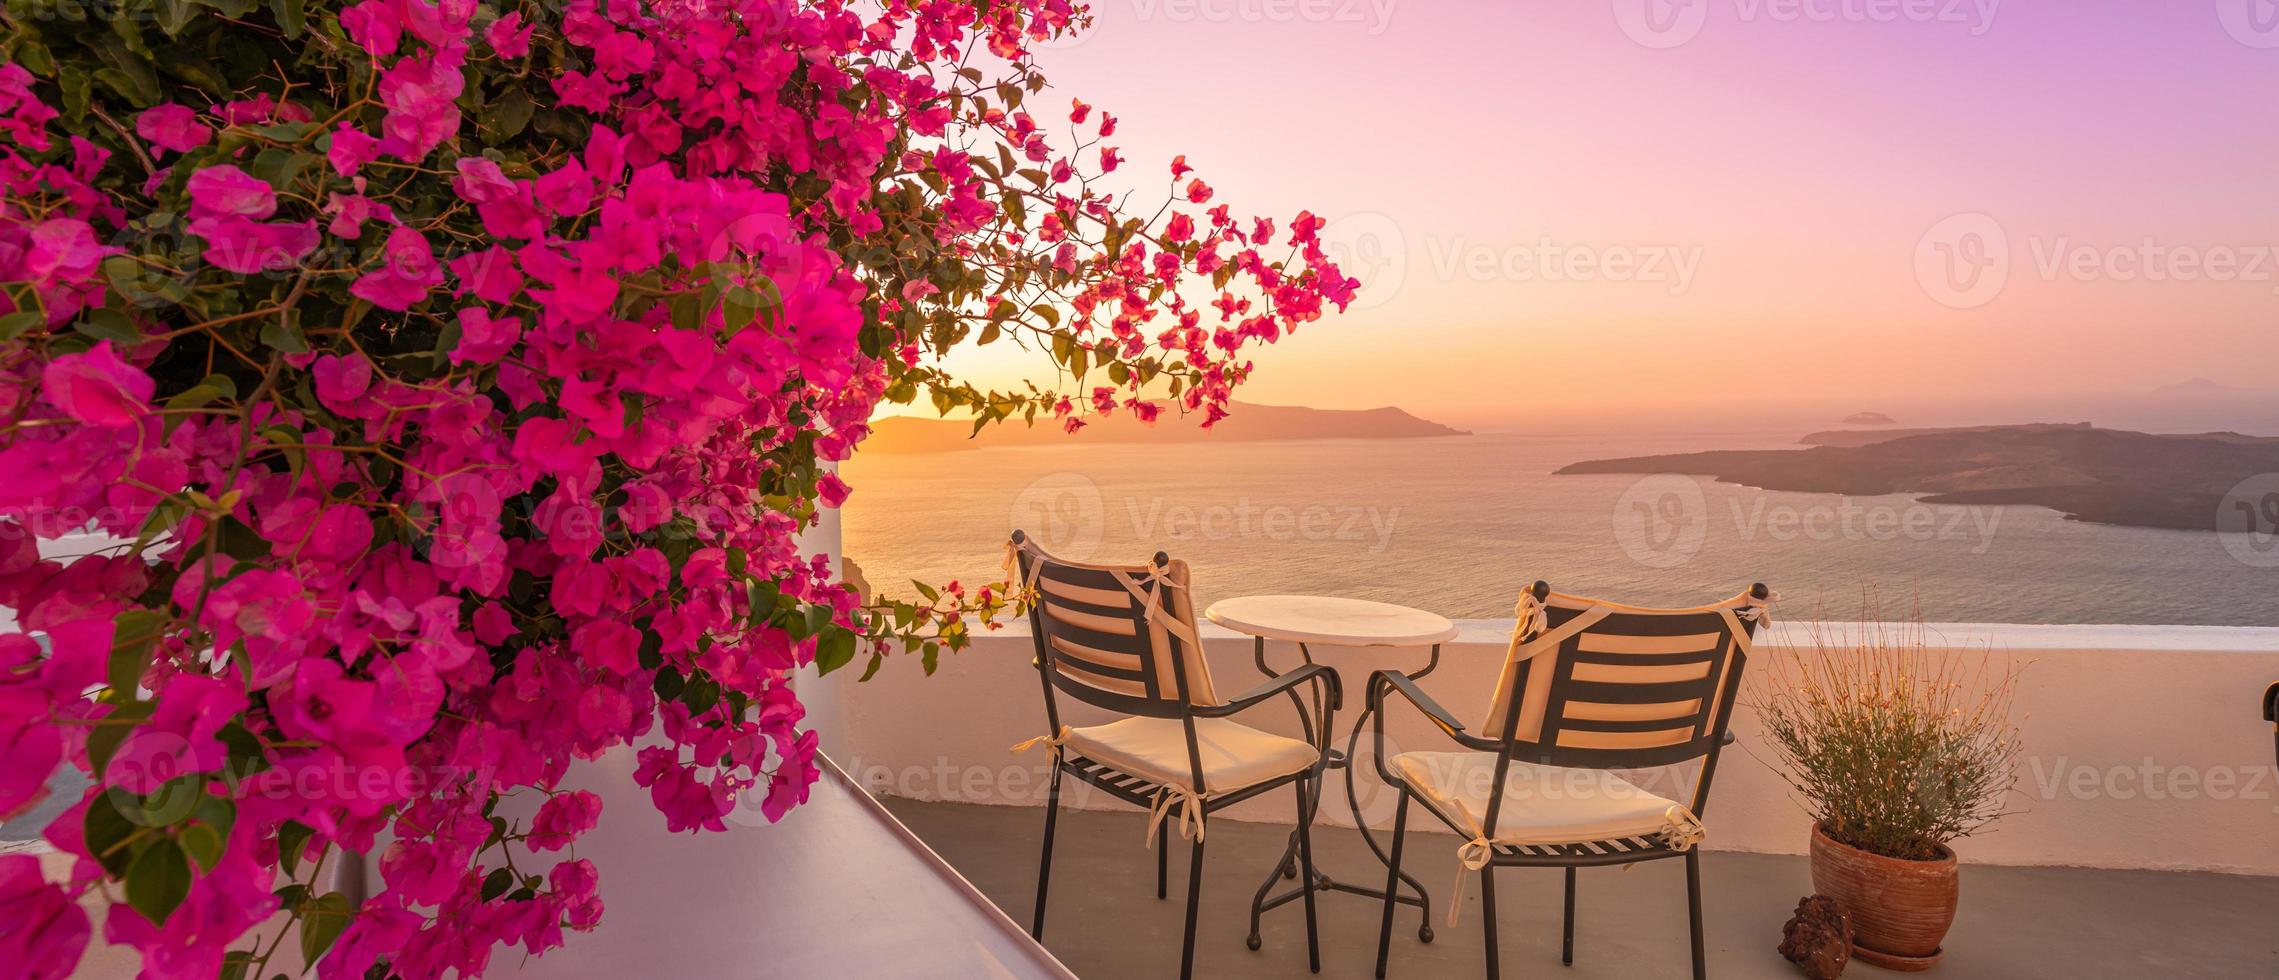 bella vista della caldera e godersi uno scenario romantico tramonto sul mar egeo, santorini. vacanza di viaggio di coppia, destinazione per la luna di miele. romanticismo con fiori, due sedie tavolo e vista mare. vacanza di lusso foto